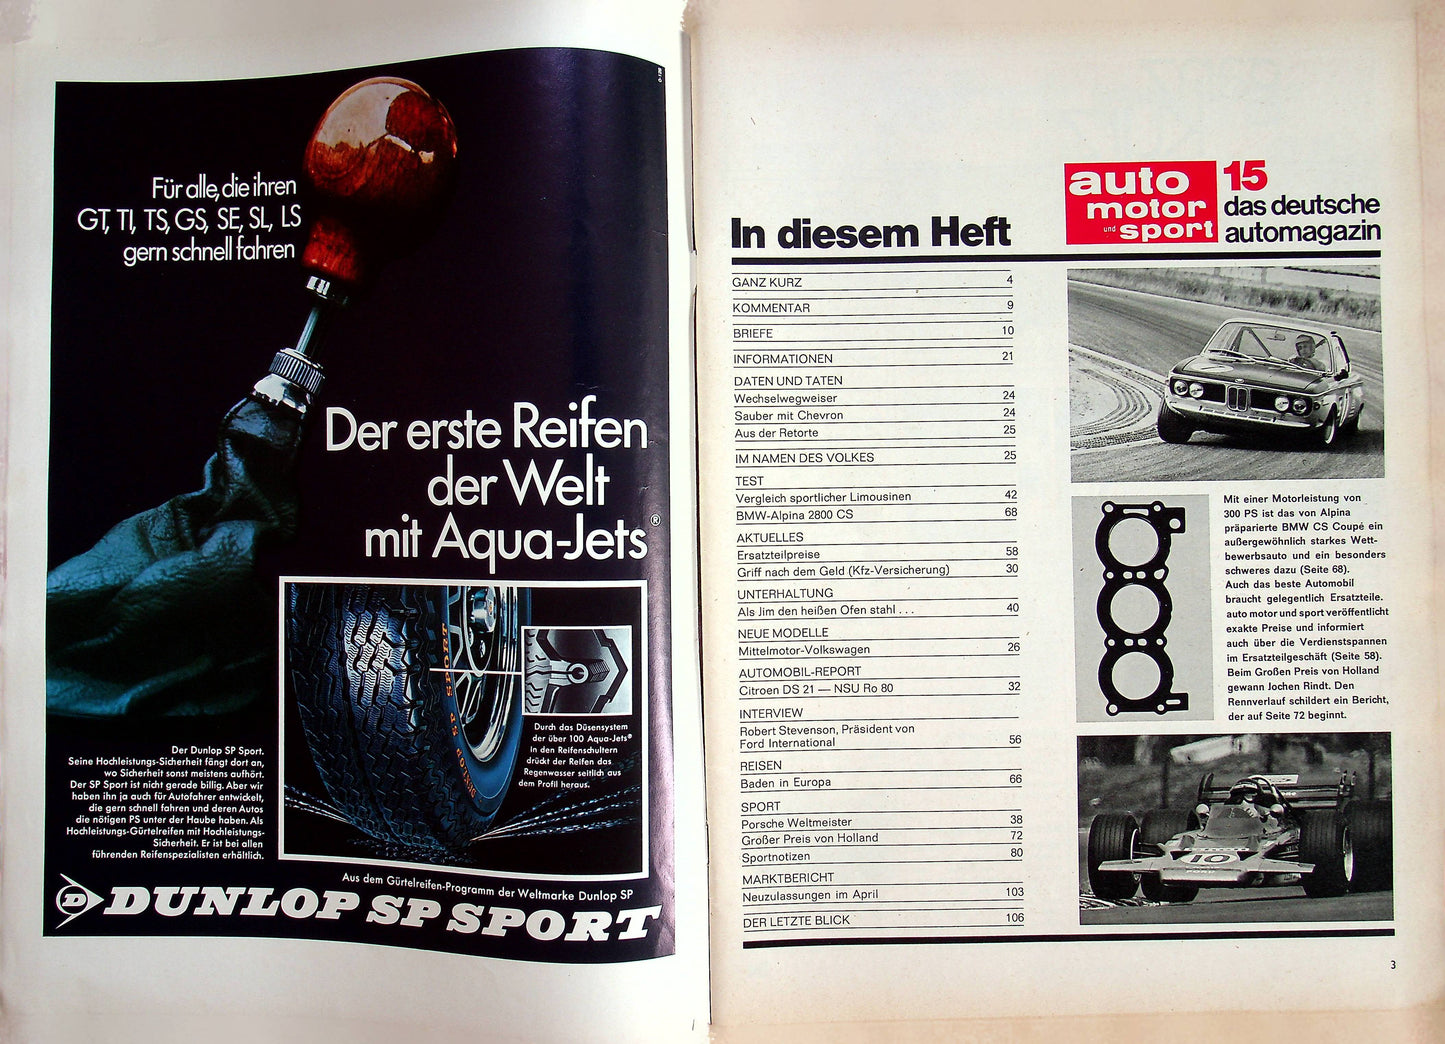 Auto Motor und Sport 15/1970